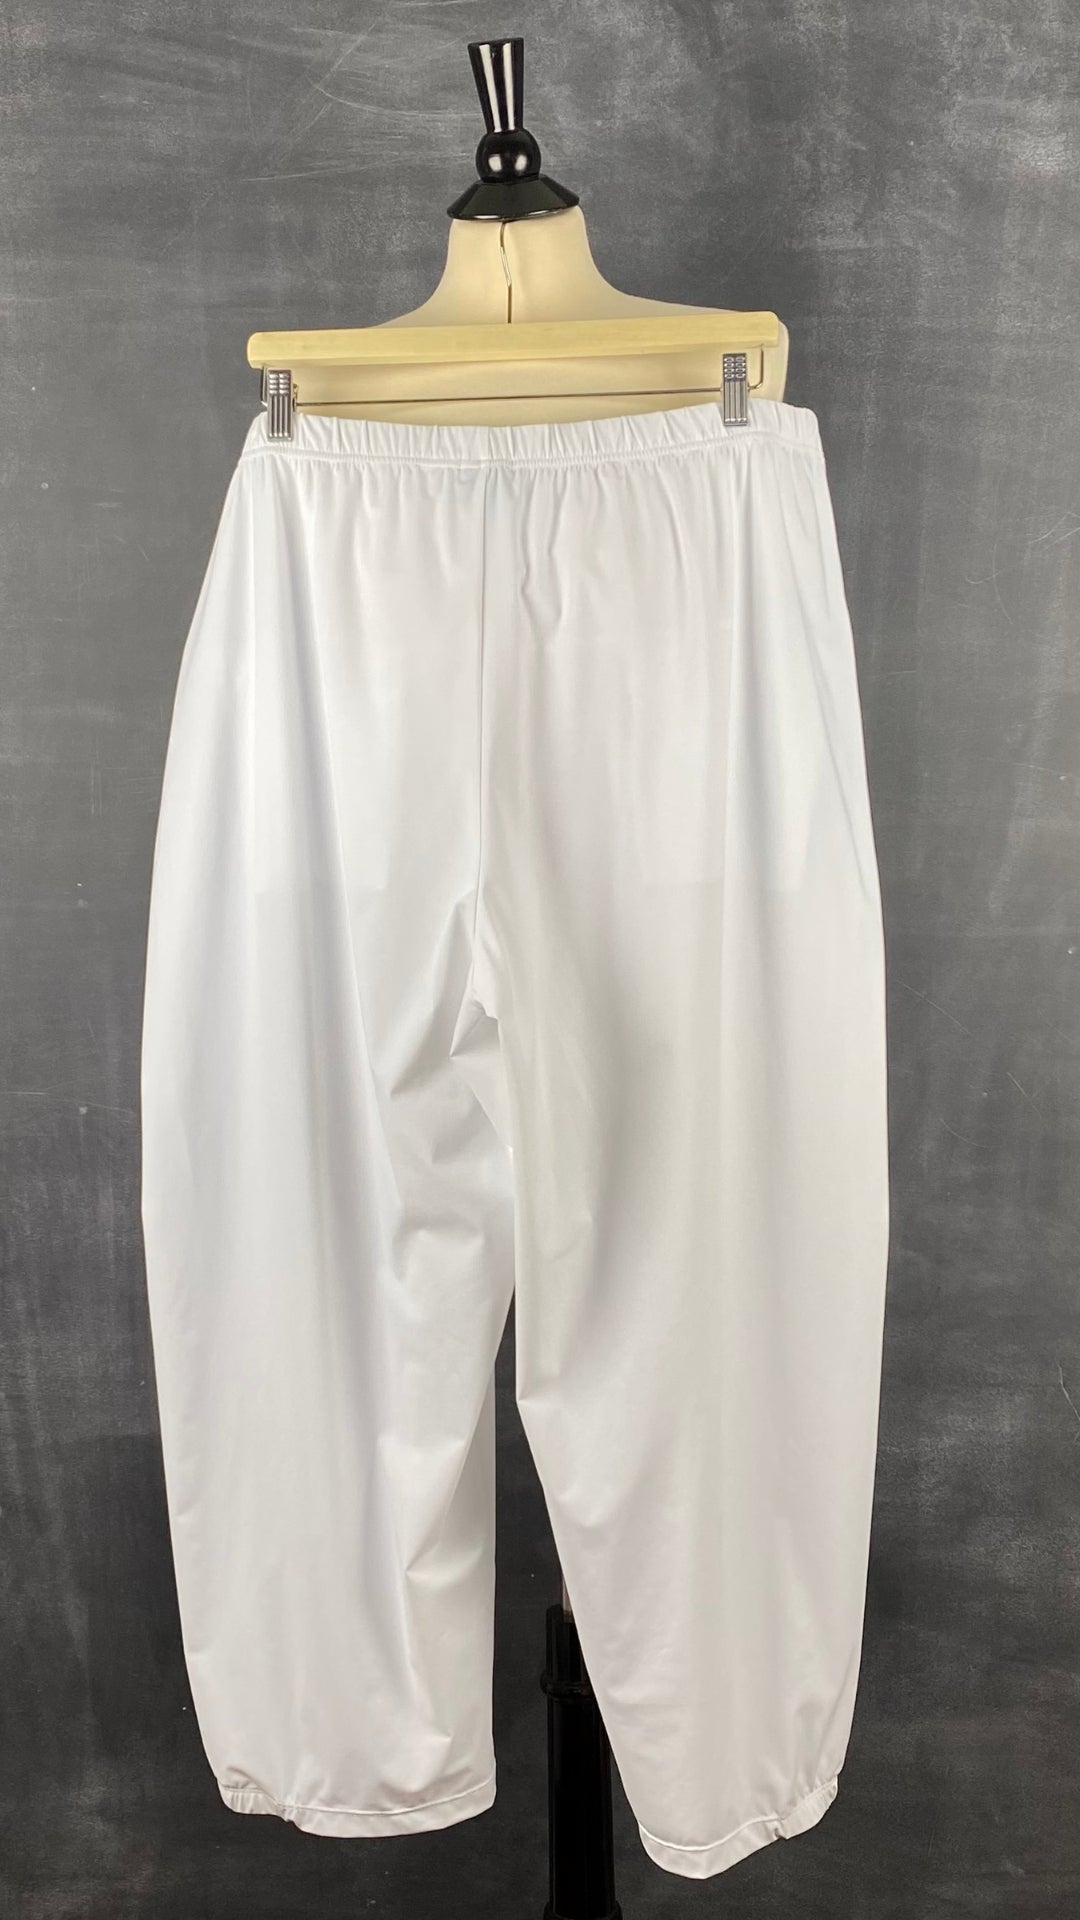 Pantalon blanc à jambe large G!ozé, taille 5xl. Vue de dos.